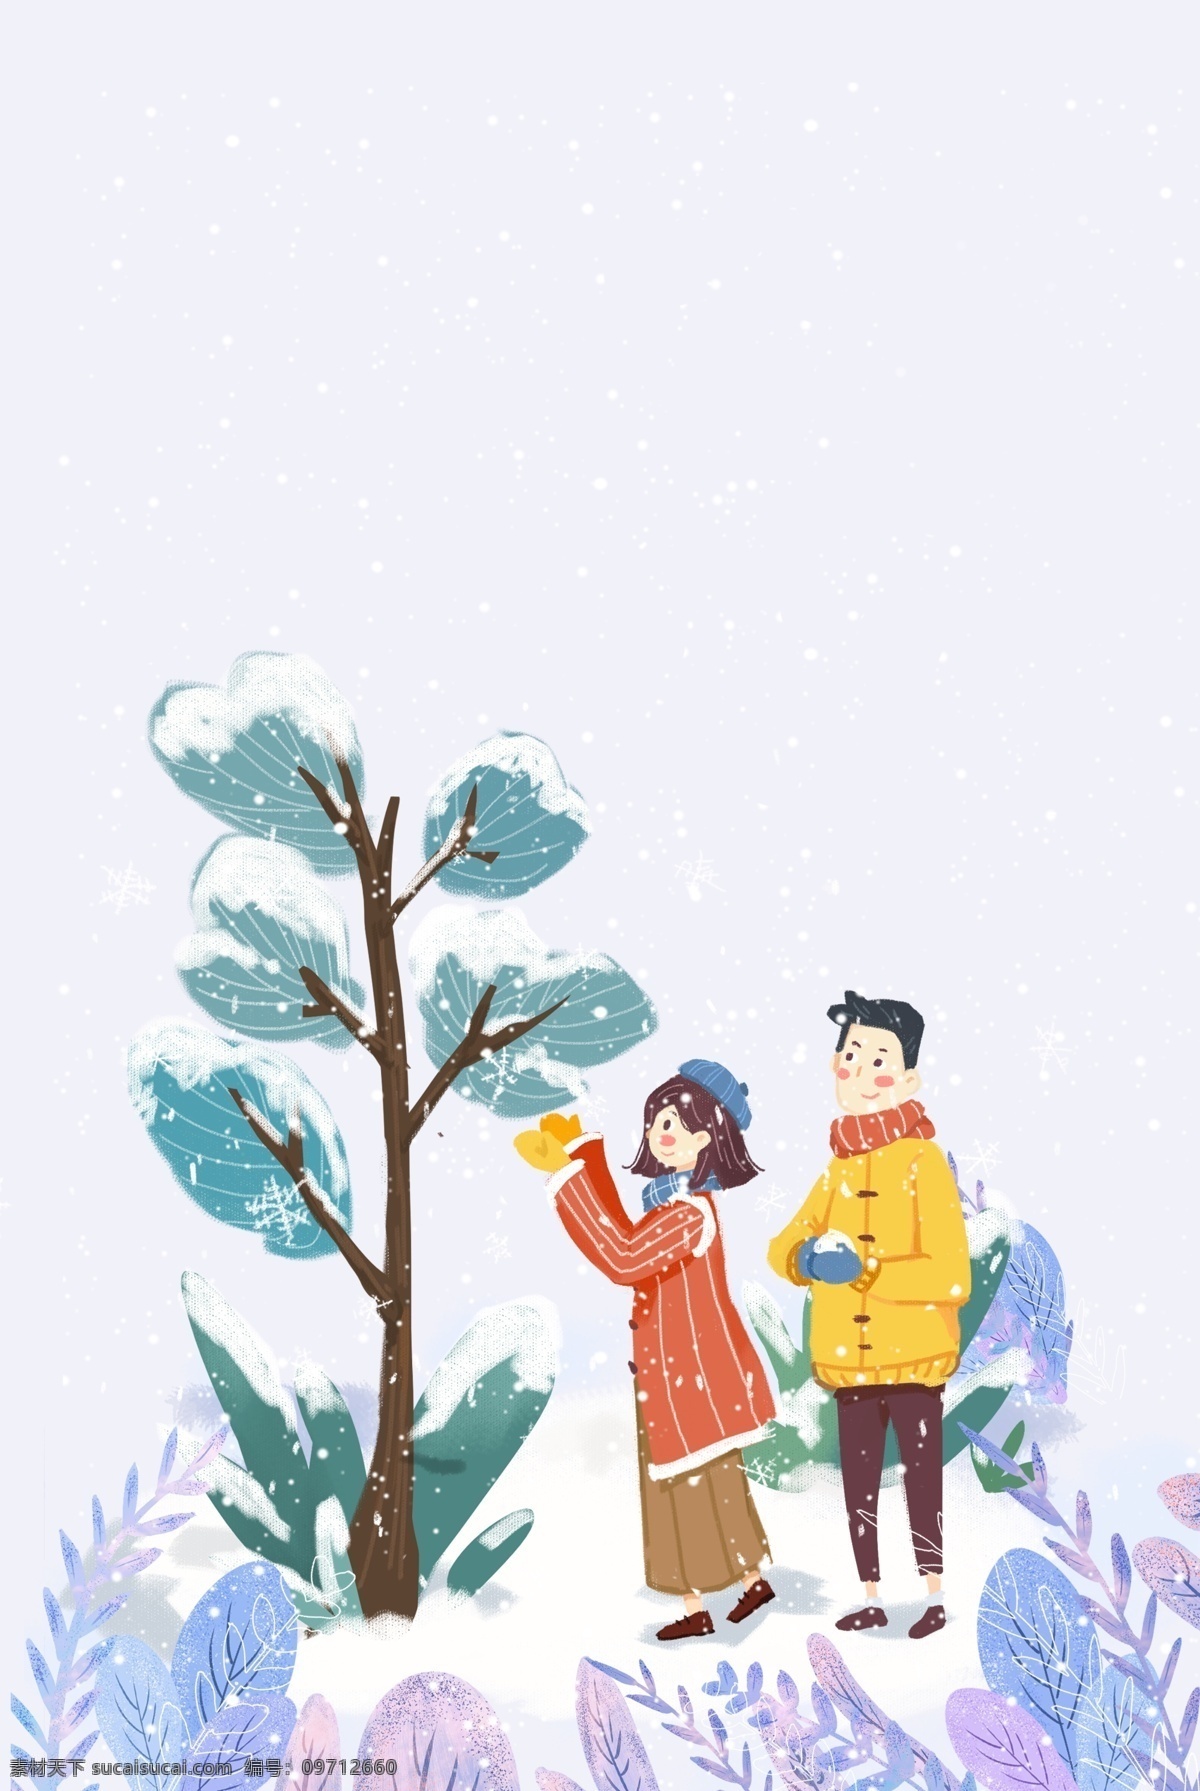 情侣 冬日 出行 看 雪景 冬天 约会 雪地 服装 户外 插画风 促销海报